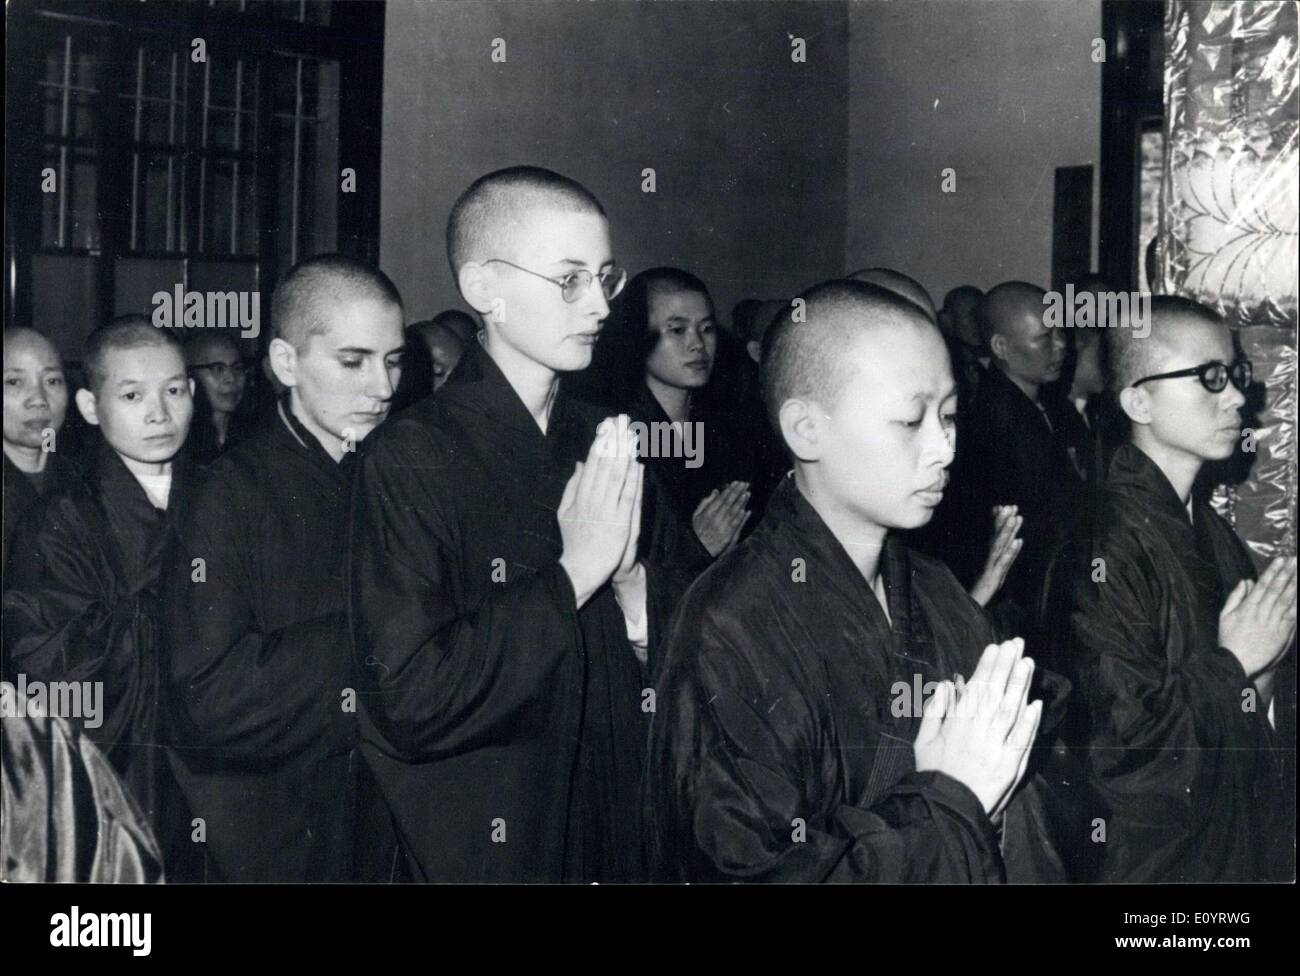 27. April 1971 - US-Frauen werden buddhistische Nonnen: zwei junge Amerikanerinnen werden buddhistische Nonnen nachdem er ihre Köpfe für die Einweihung in einem buddhistischen Tempel in Taipei, Taiwan, rasiert, wie sie mit einer Gruppe von chinesischen Nonnen, die sich in feierlichen Gelübden beten, die Lehre des Buddha zu folgen. Die Noviates sind zweite und dritte von rechts an vorderster Front. Stockfoto